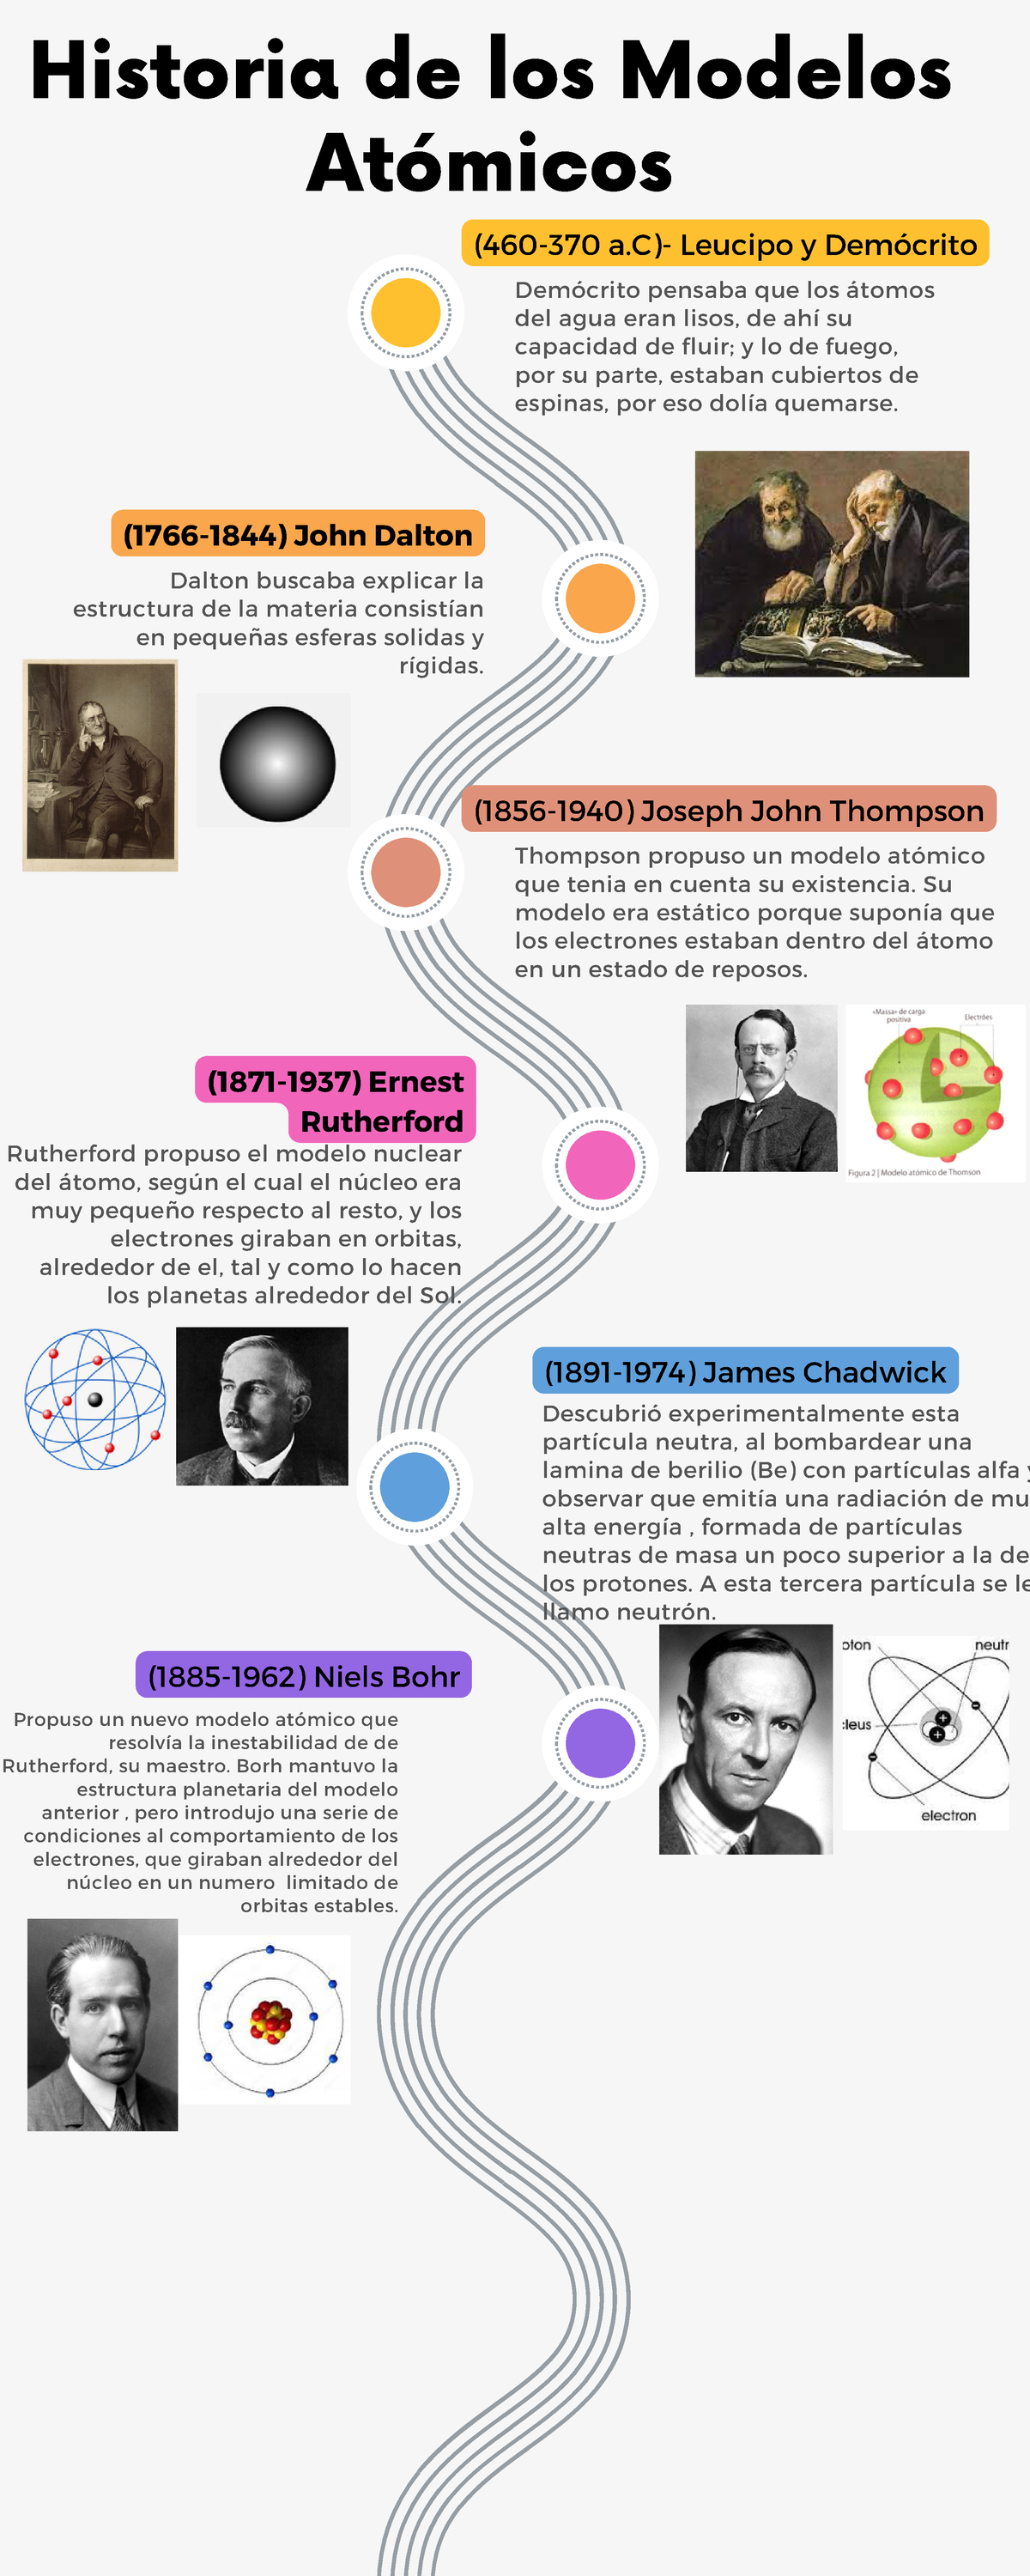 Historia de los modelos atomicos - (460-370 a)- Leucipo y Demócrito  (1856-1940) Joseph John Thompson - Studocu